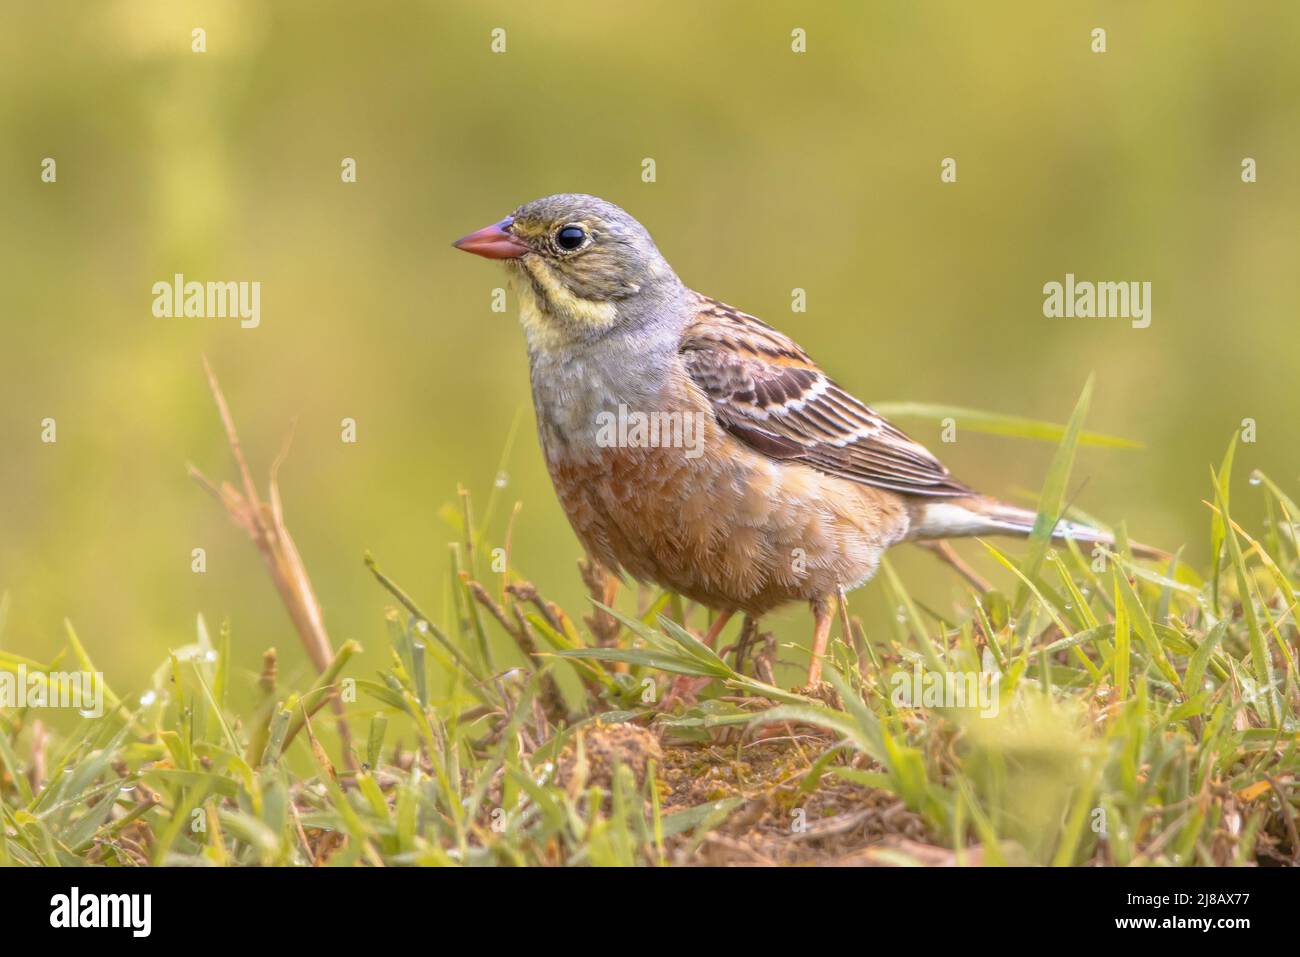 Ortolan Bunting (Emberiza hortulana) perché sur l'herbe. C'est un oiseau eurasien de la famille des Emberizidae. Bulgarie. Faune scène de la nature i Banque D'Images